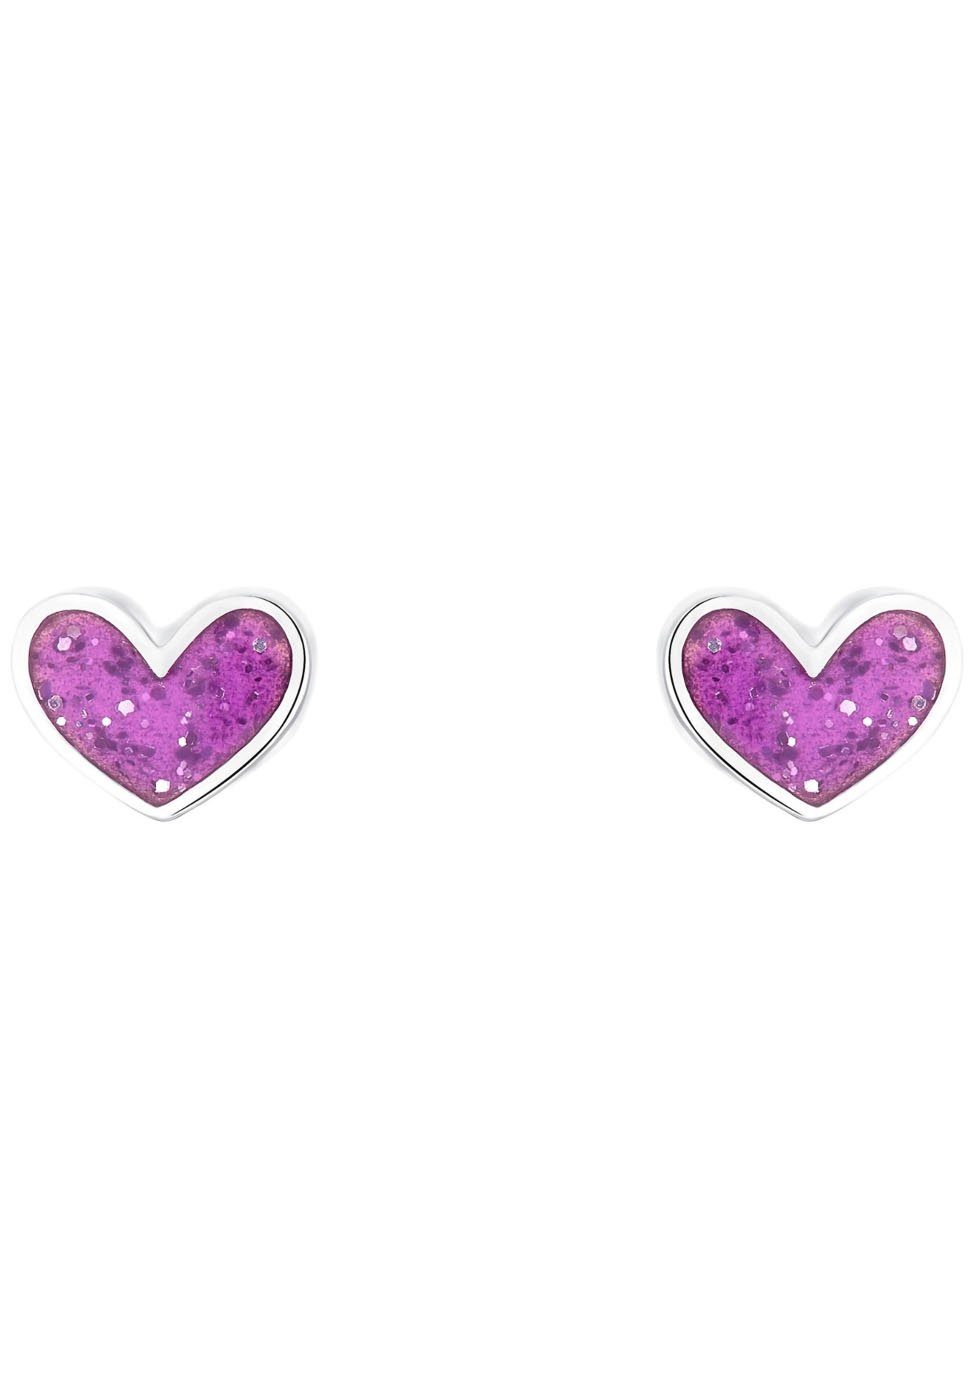 der Ohrstecker Prinzessin Prinzessin Lillifee Ohrstecker Purple von 2036441, Mädchen mit für Paar Marke Herz-Motiv Heart, Lillifee